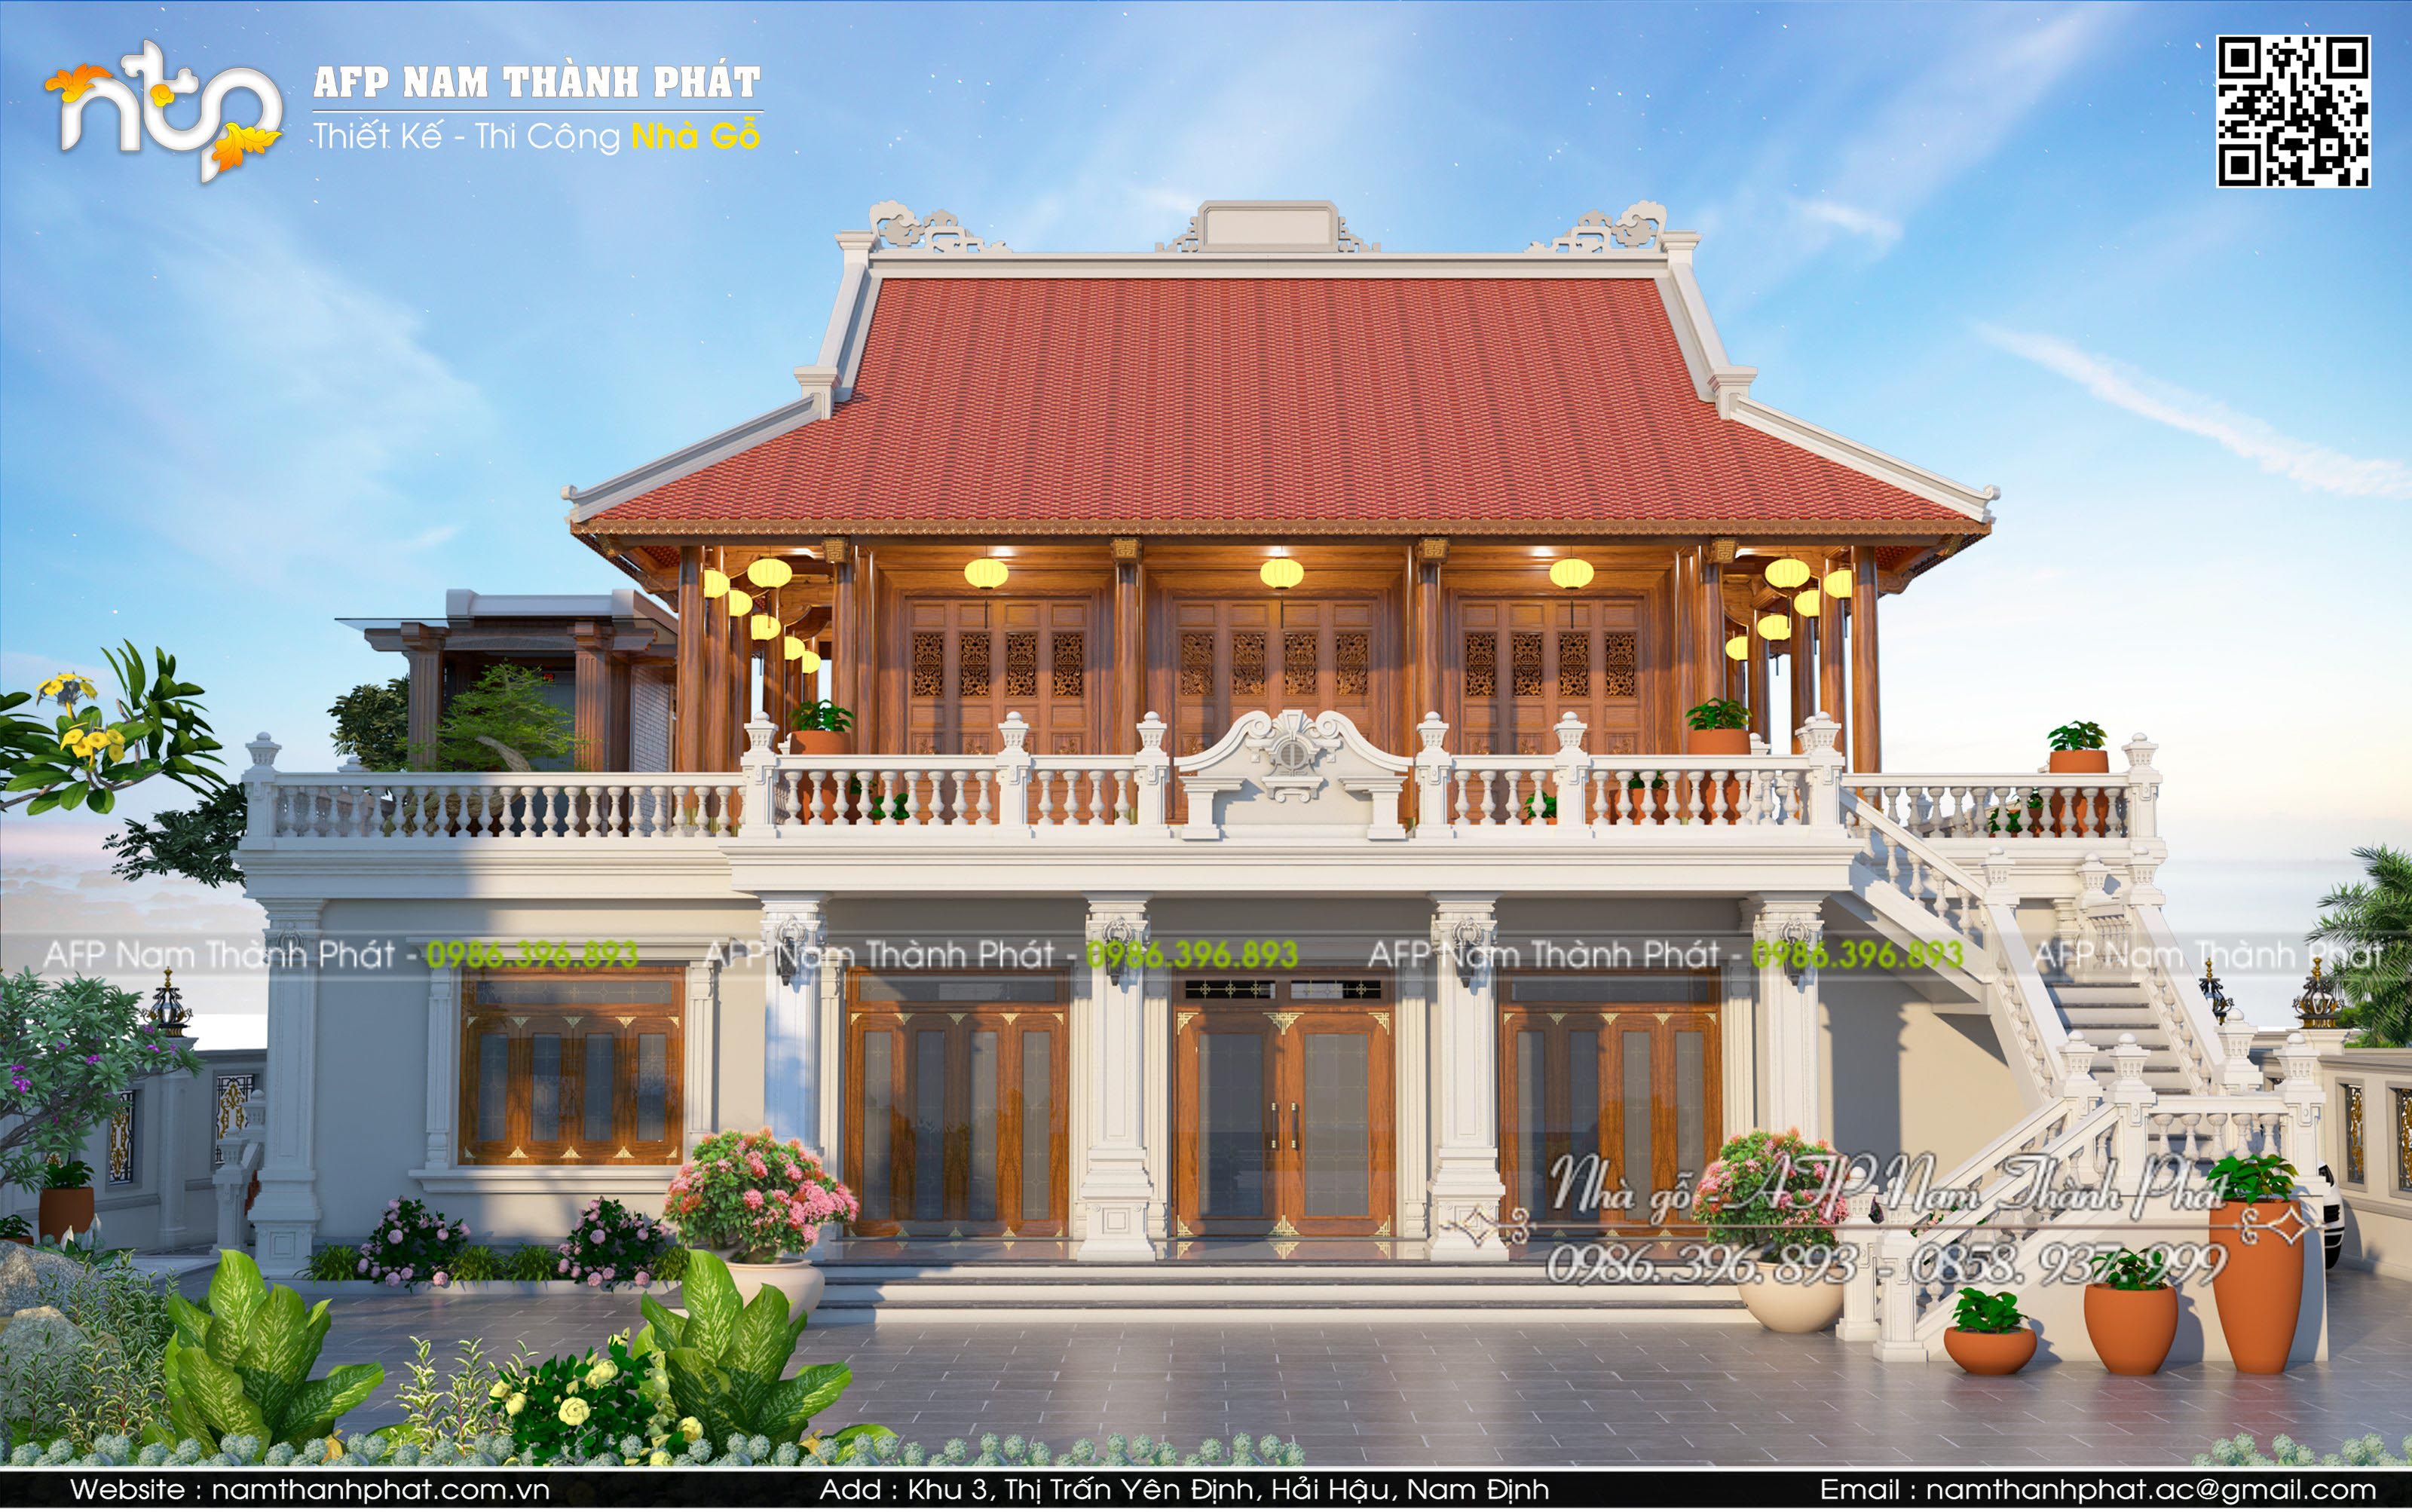 TOP Mẫu thiết kế nội thất nhà ống, nhà phố biệt thự đẹp update tại Hà Nội